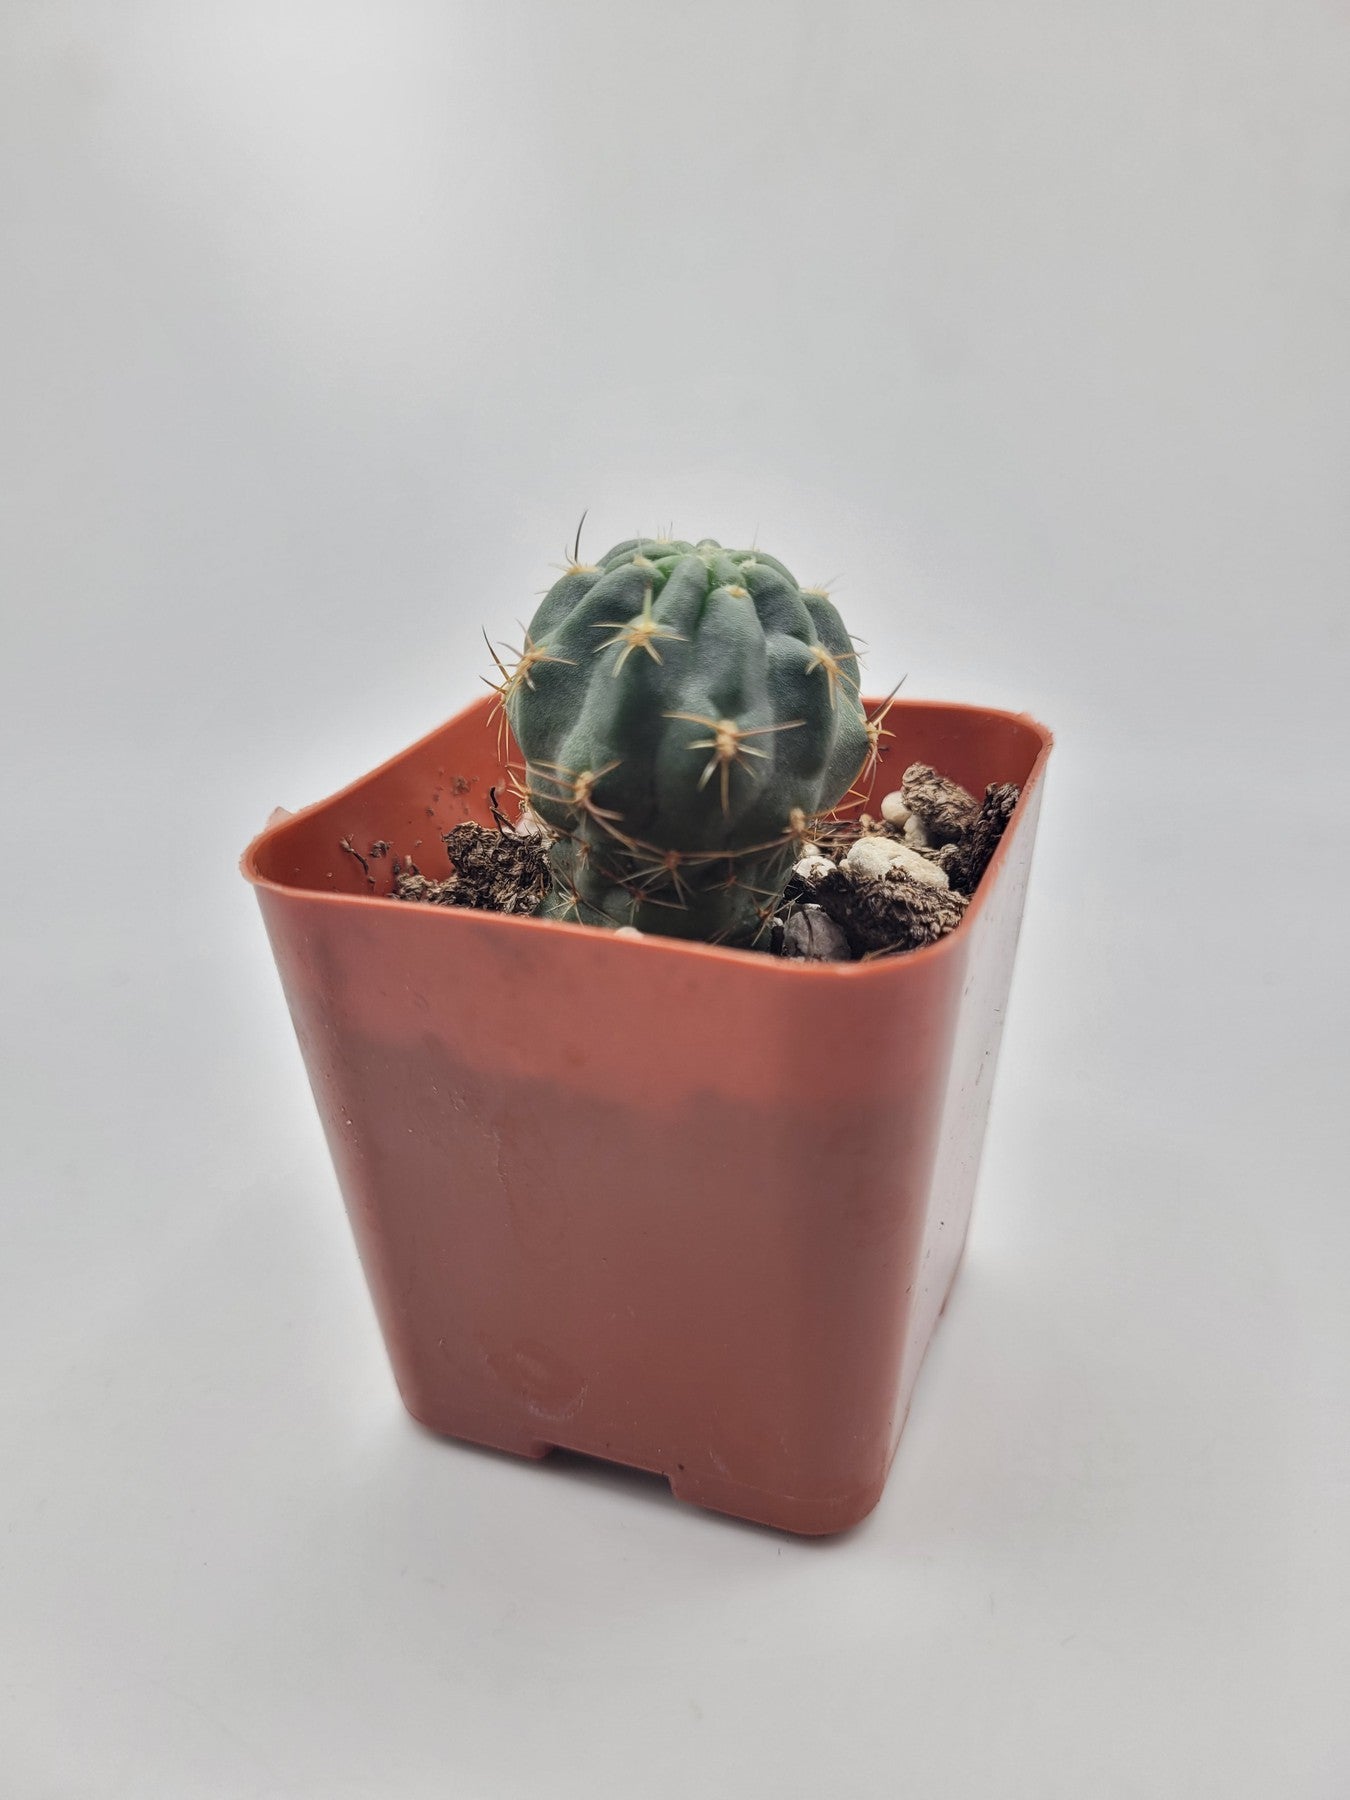 #38c 2" Gymnocalycium Baldianum-Cactus - Small - Exact Type-The Succulent Source